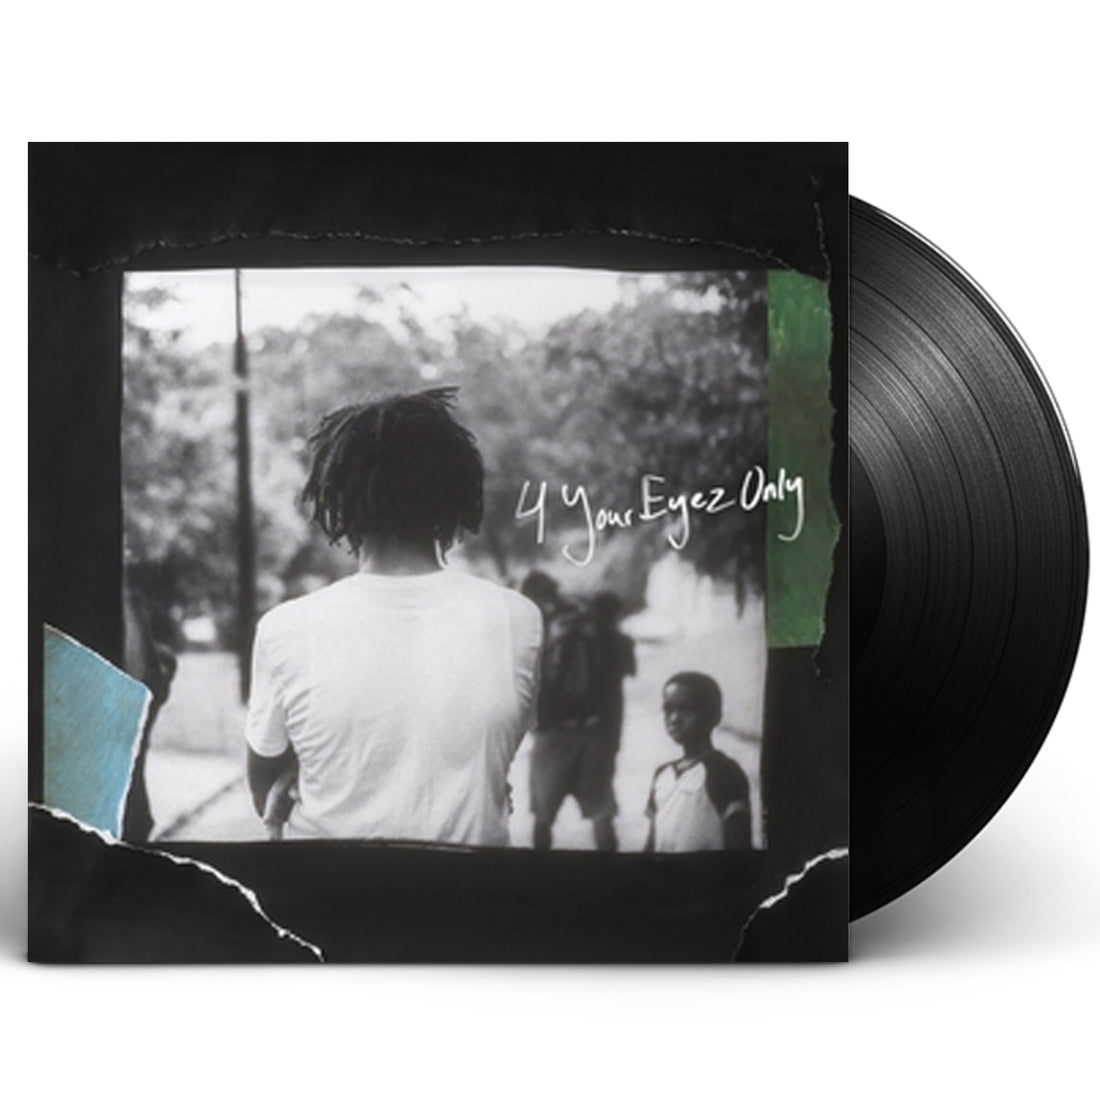 J. Cole "4 Your Eyez Only" LP Vinyl